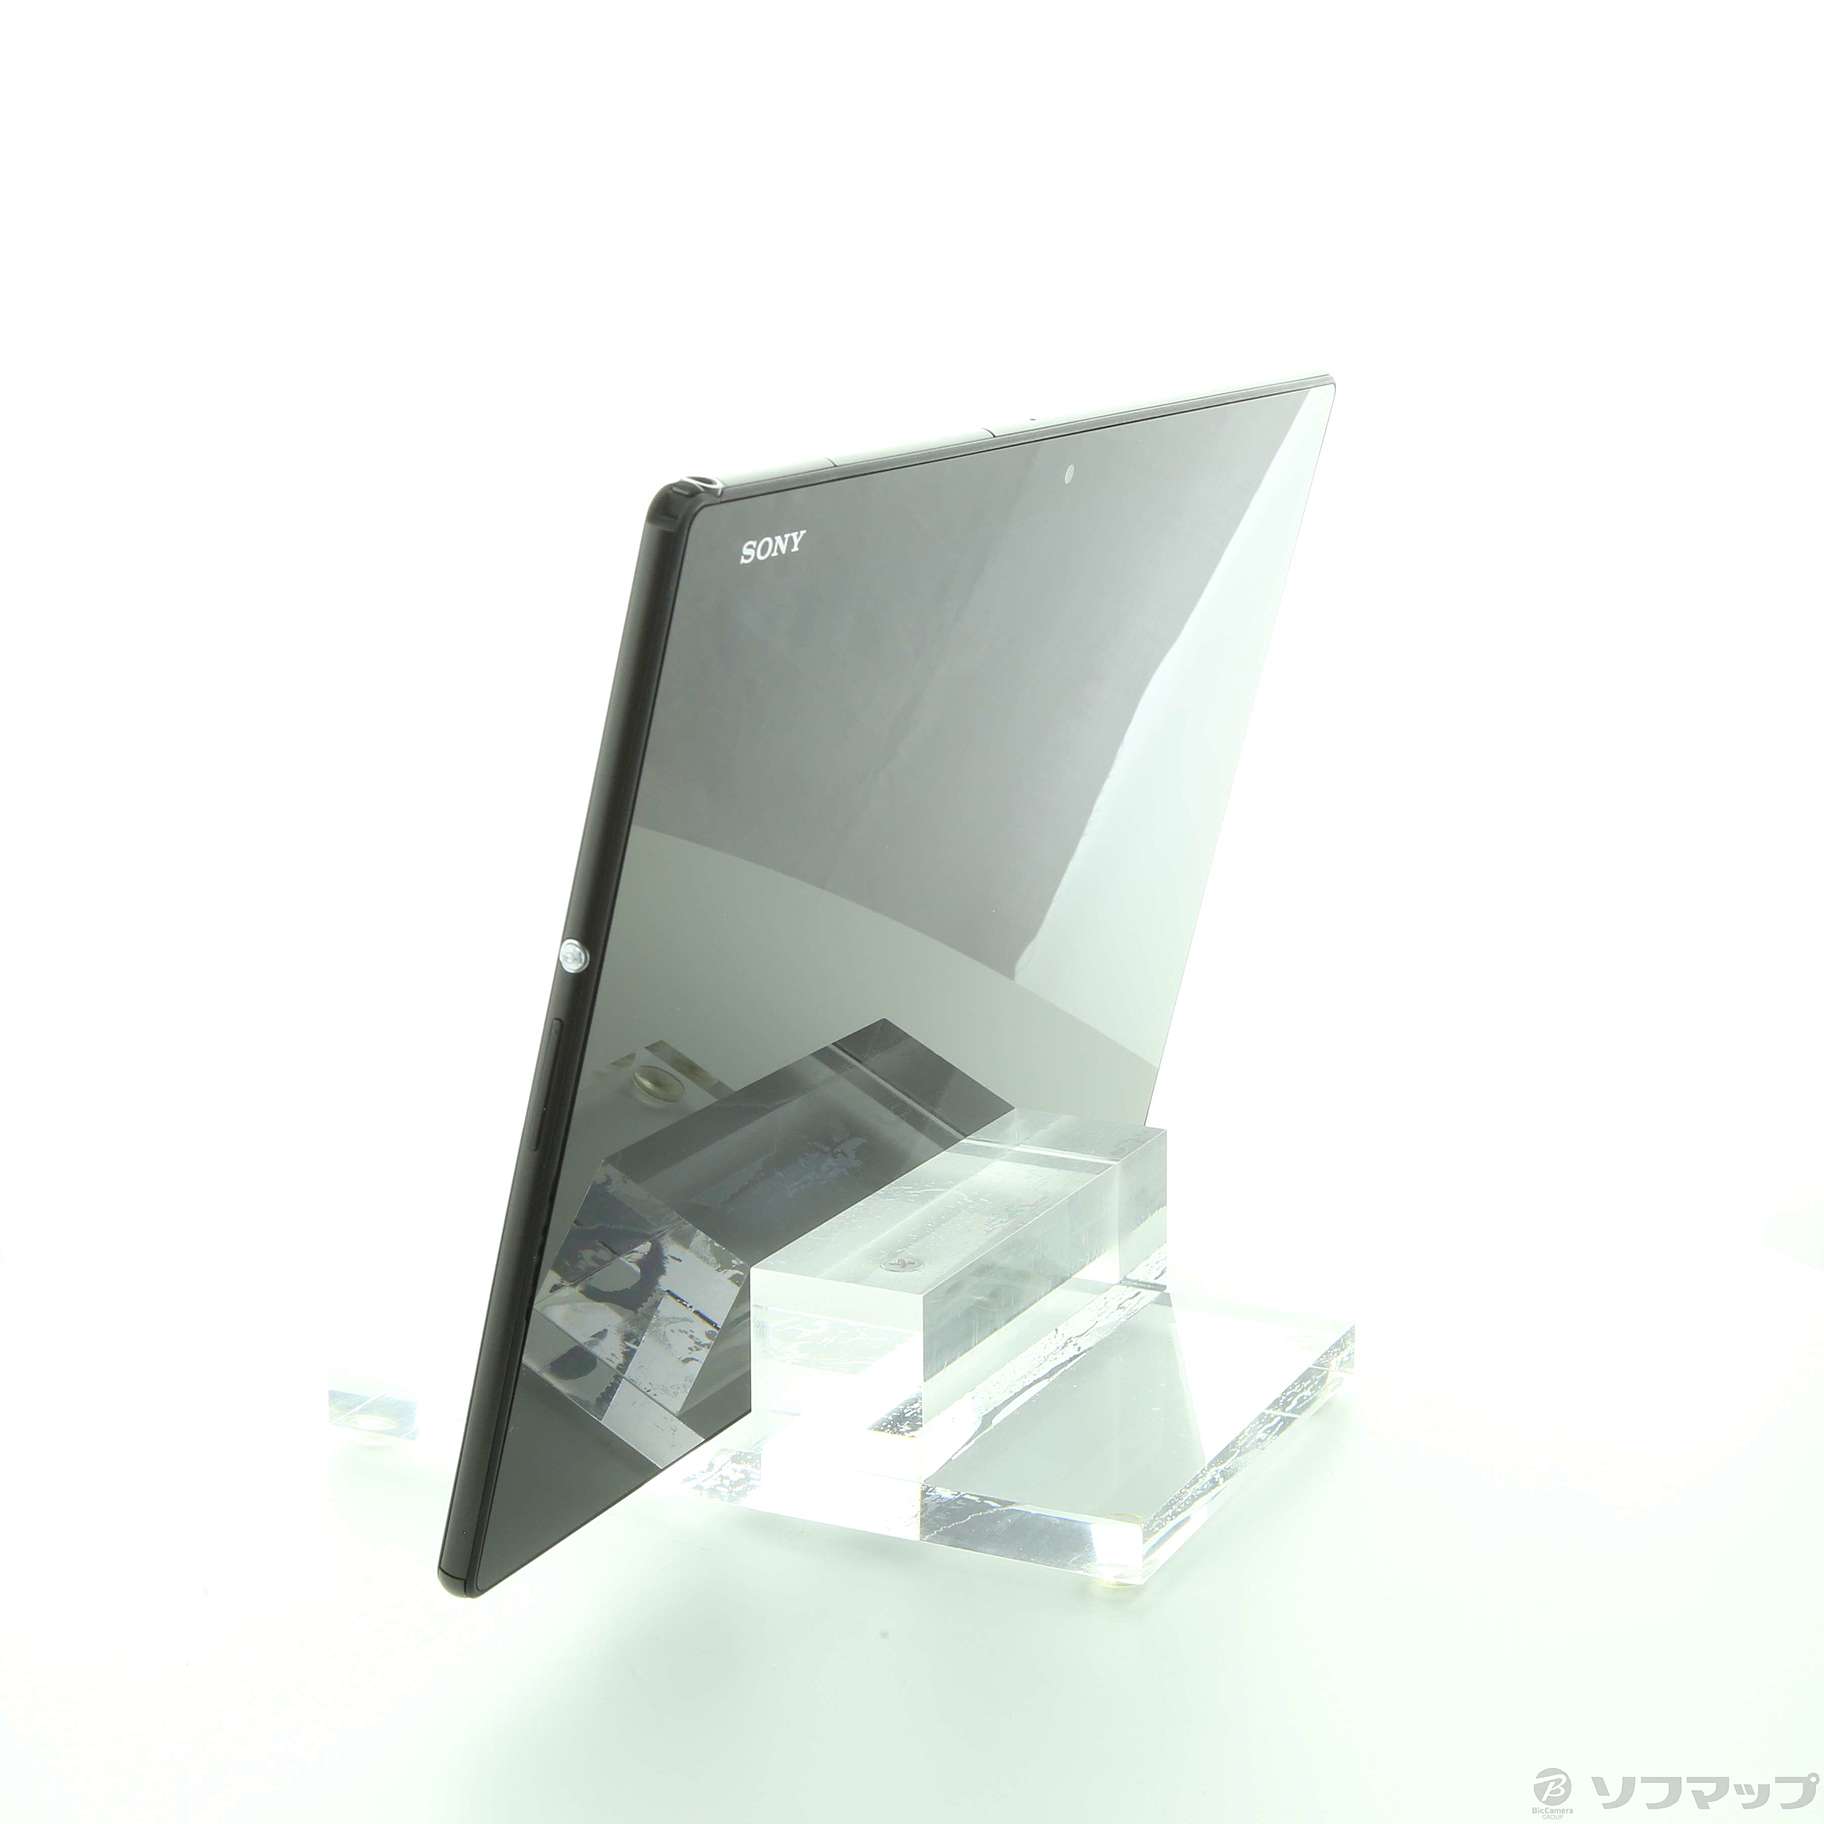 人気第1位 Sgp712jp B Xperia Z4 Tablet ストレージ32gb ブラック 品 新着商品 Icctower Mn